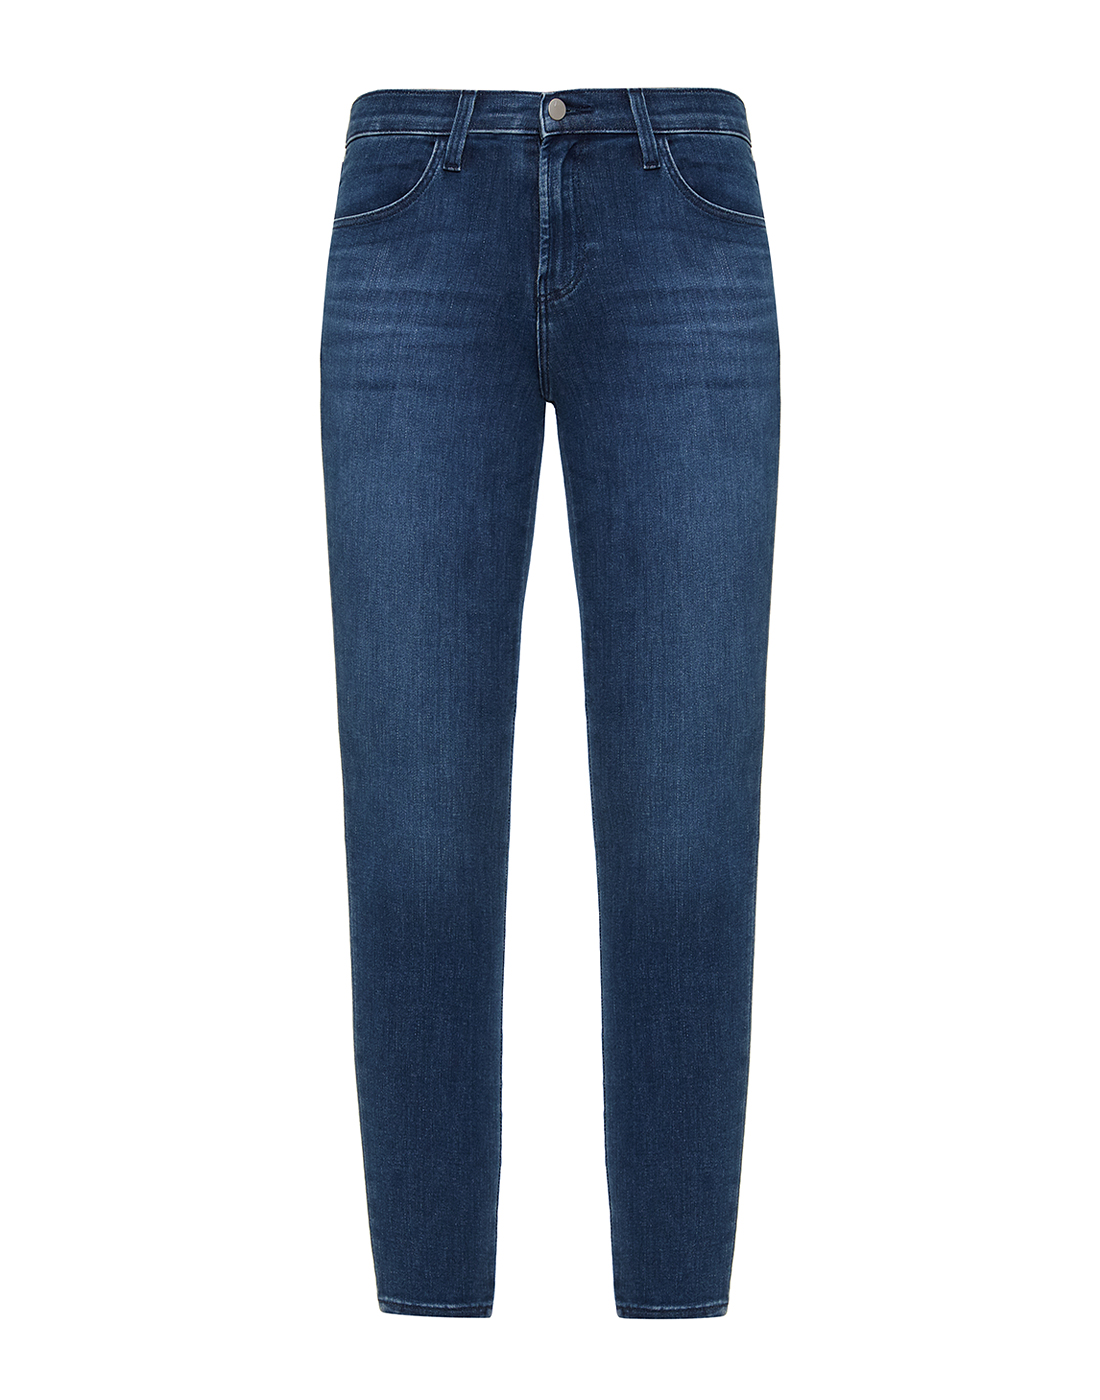 Женские синие джинсы J BRAND SJB003191-1